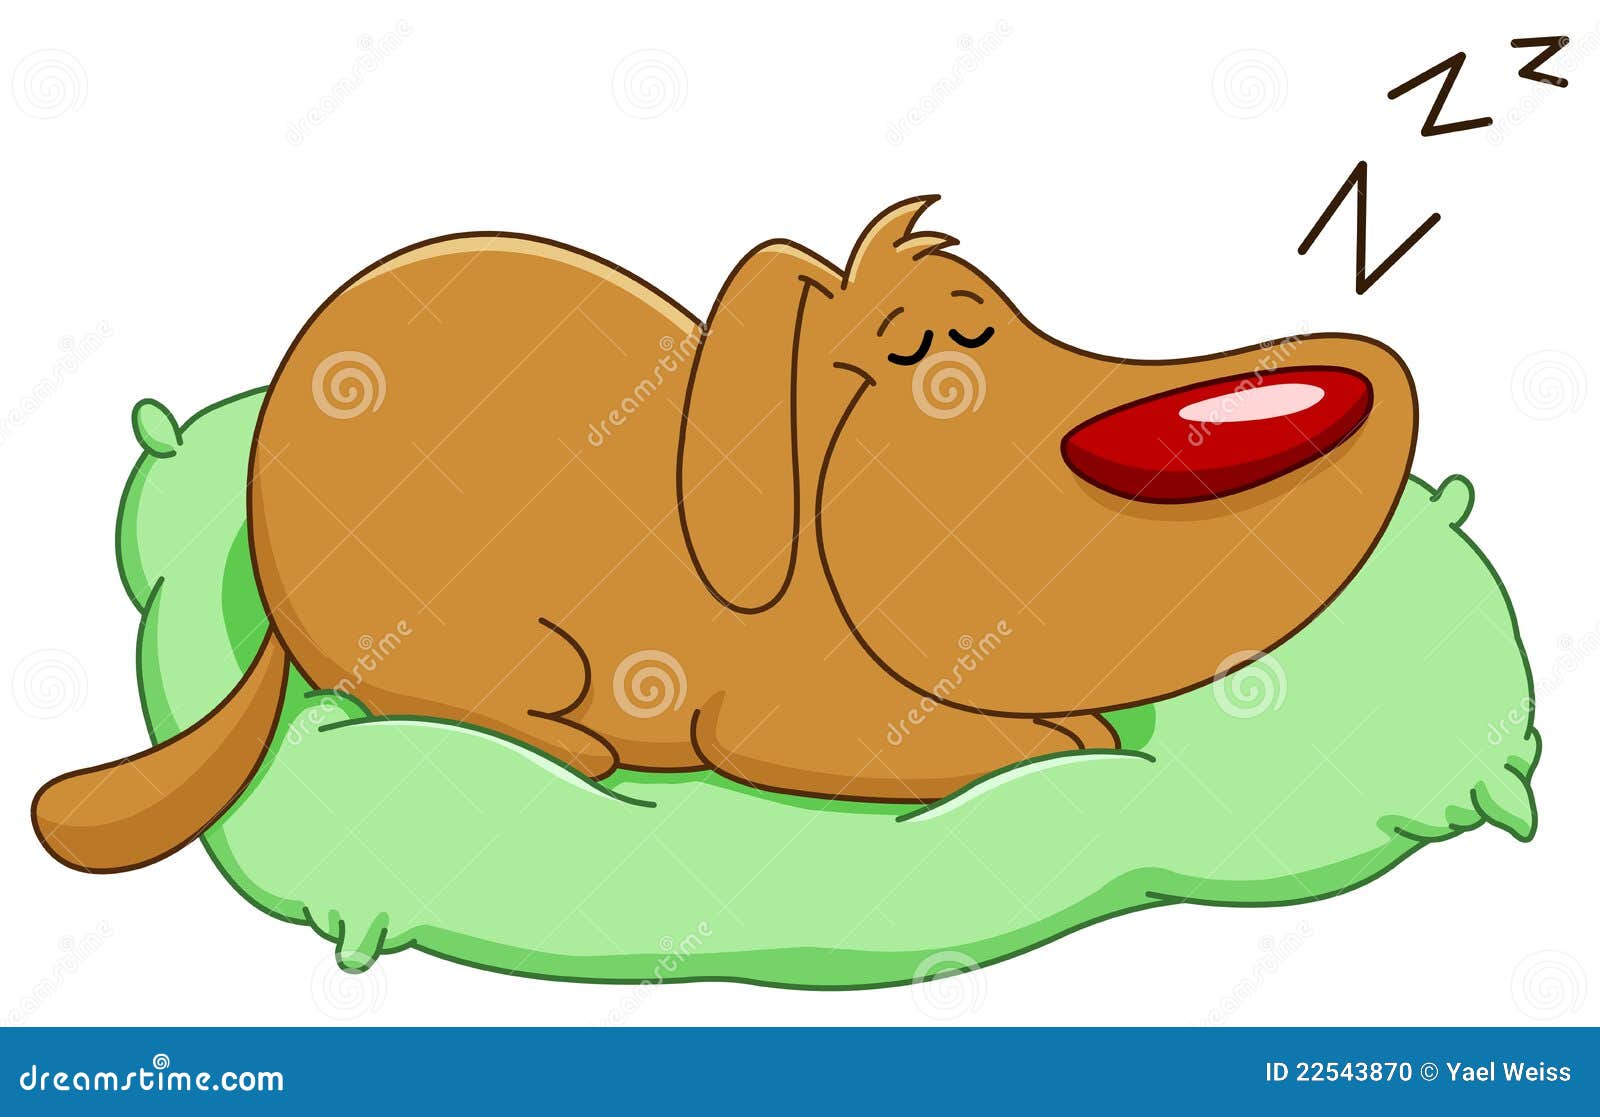 Sleeping Dog Stock Photo - Image: 22543870